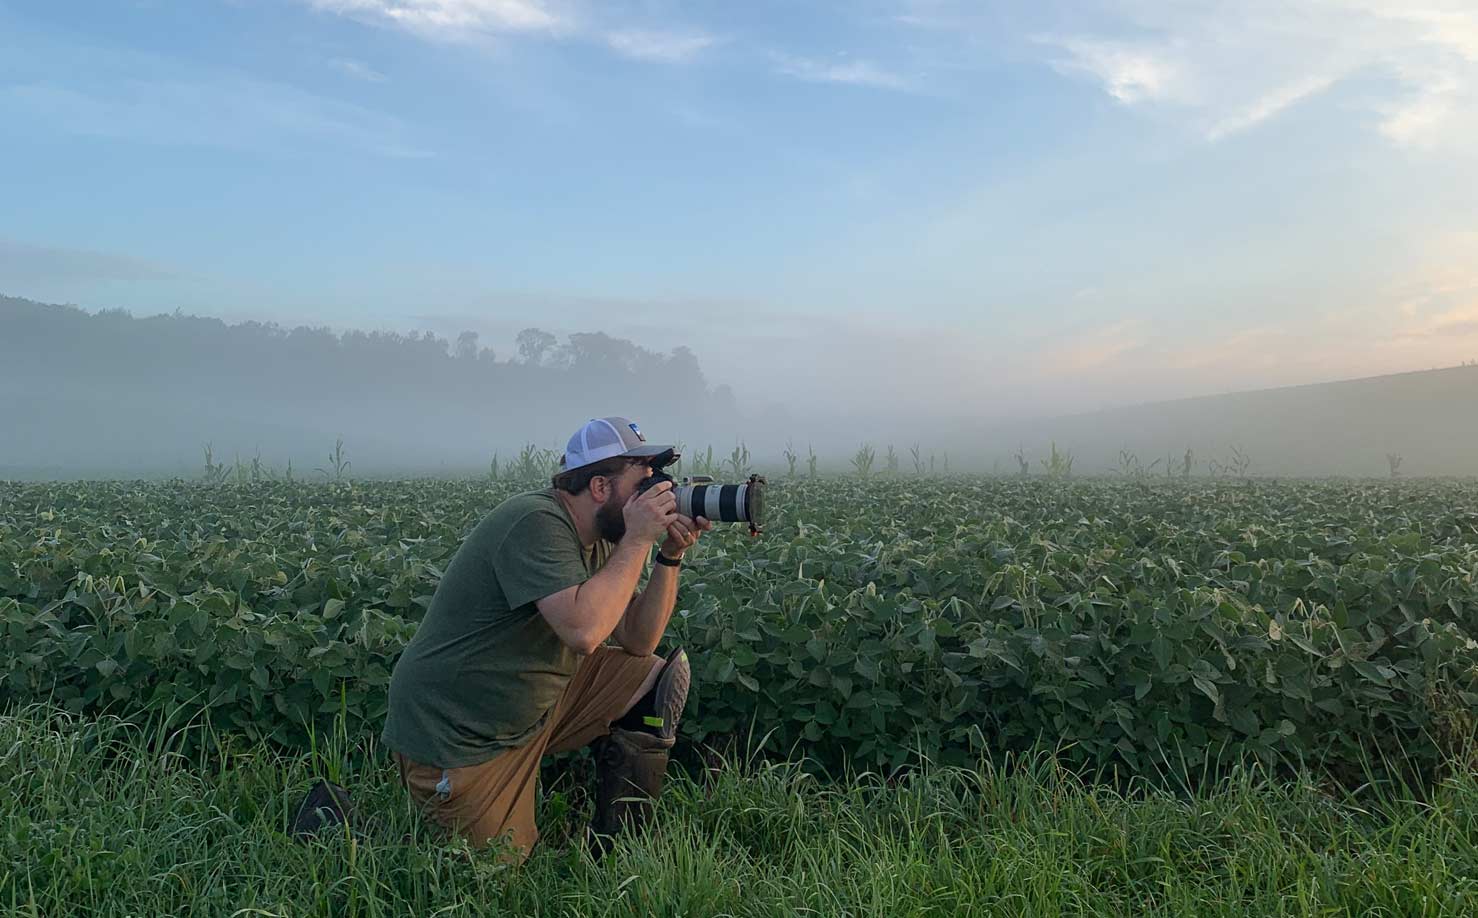 Kneeling photographer taking a photo in a misty farm field